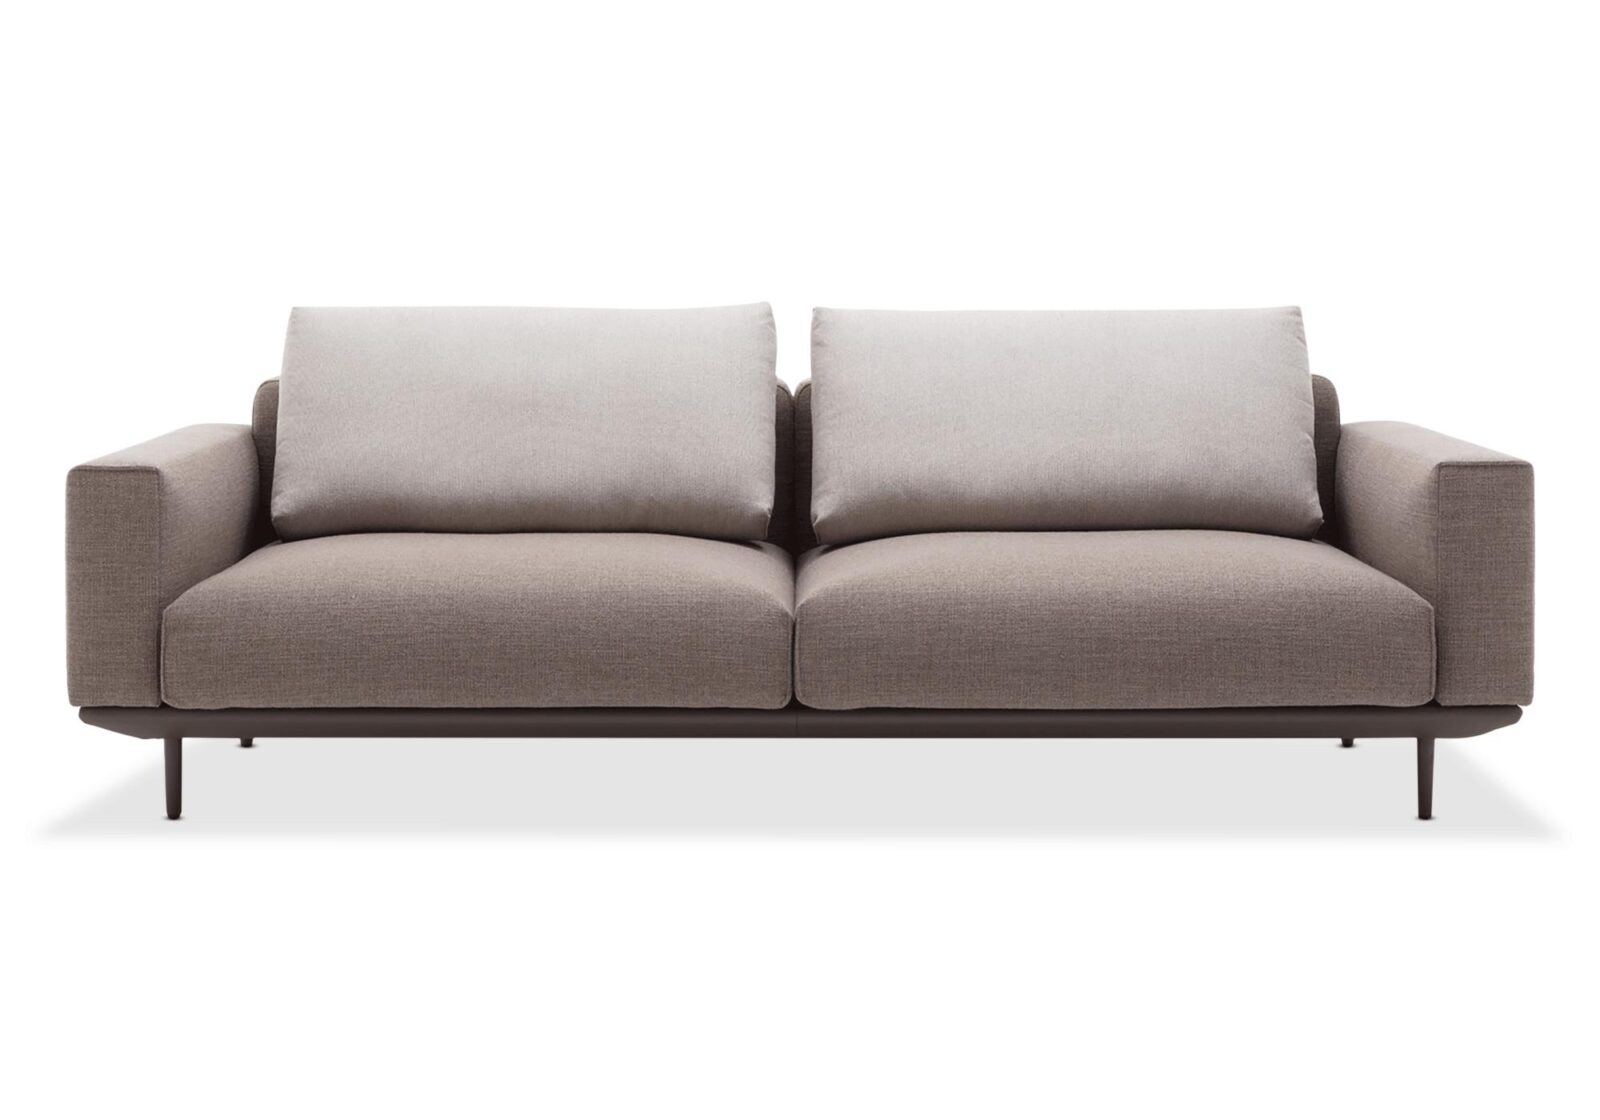 2.5er Sofa Volo  in Leder oder Stoff. Bezug: Stoff/Leder. Farbe: Graubeige/Graubraun. Erhältlich bei Möbel Gallati.